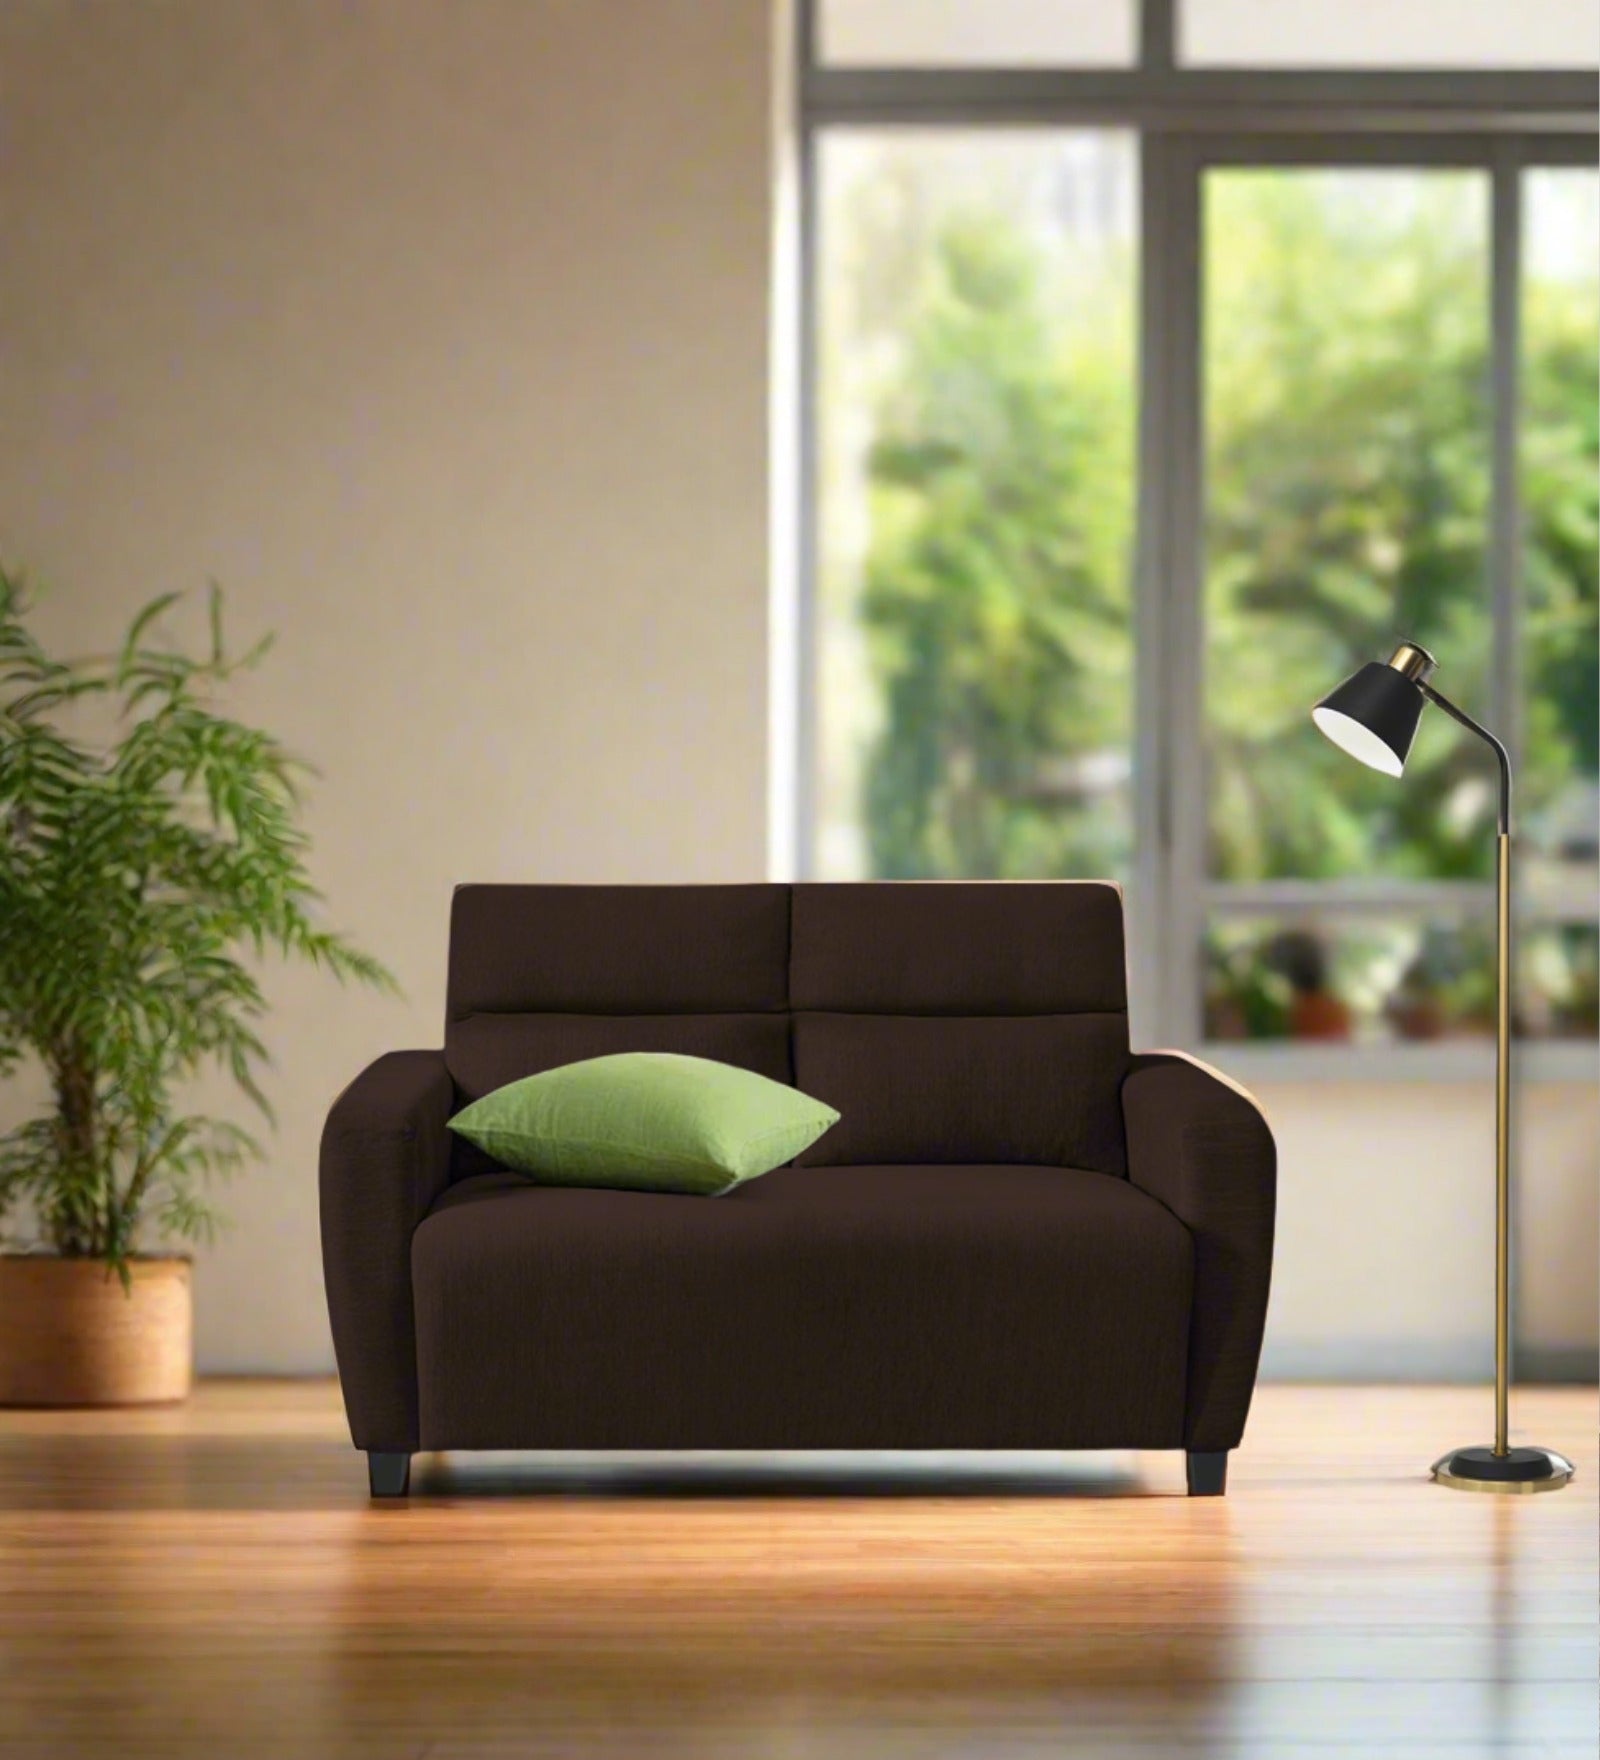 Bakadi Fabric 2 Seater Sofa in Coffee brown Colour